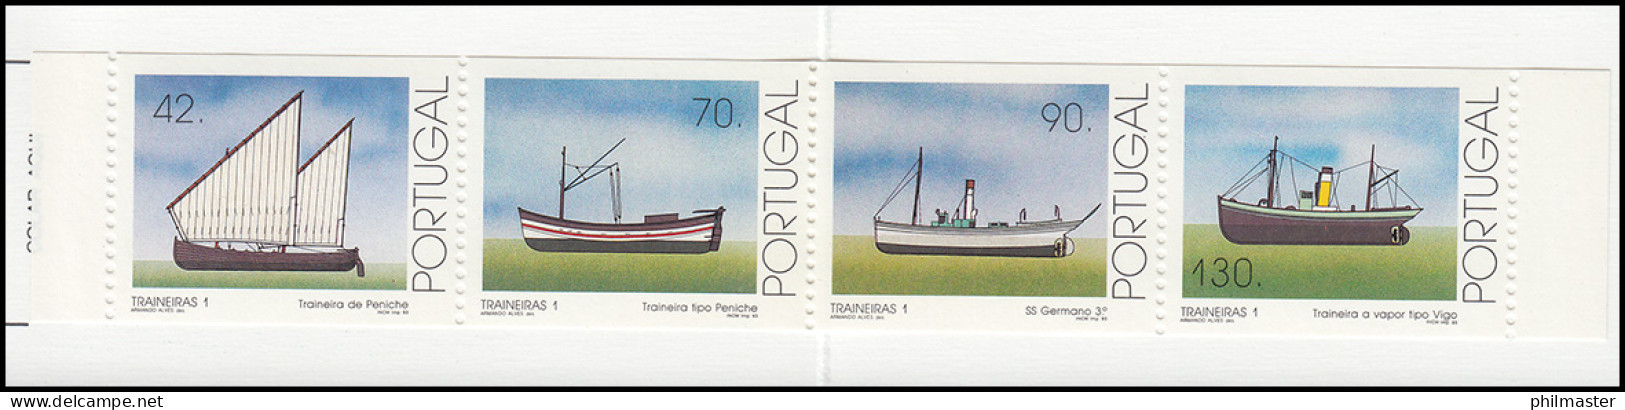 Portugal-Markenheftchen 10 Küstenfischerei Schleppnetzschiffe 1993, Postfrisch - Carnets